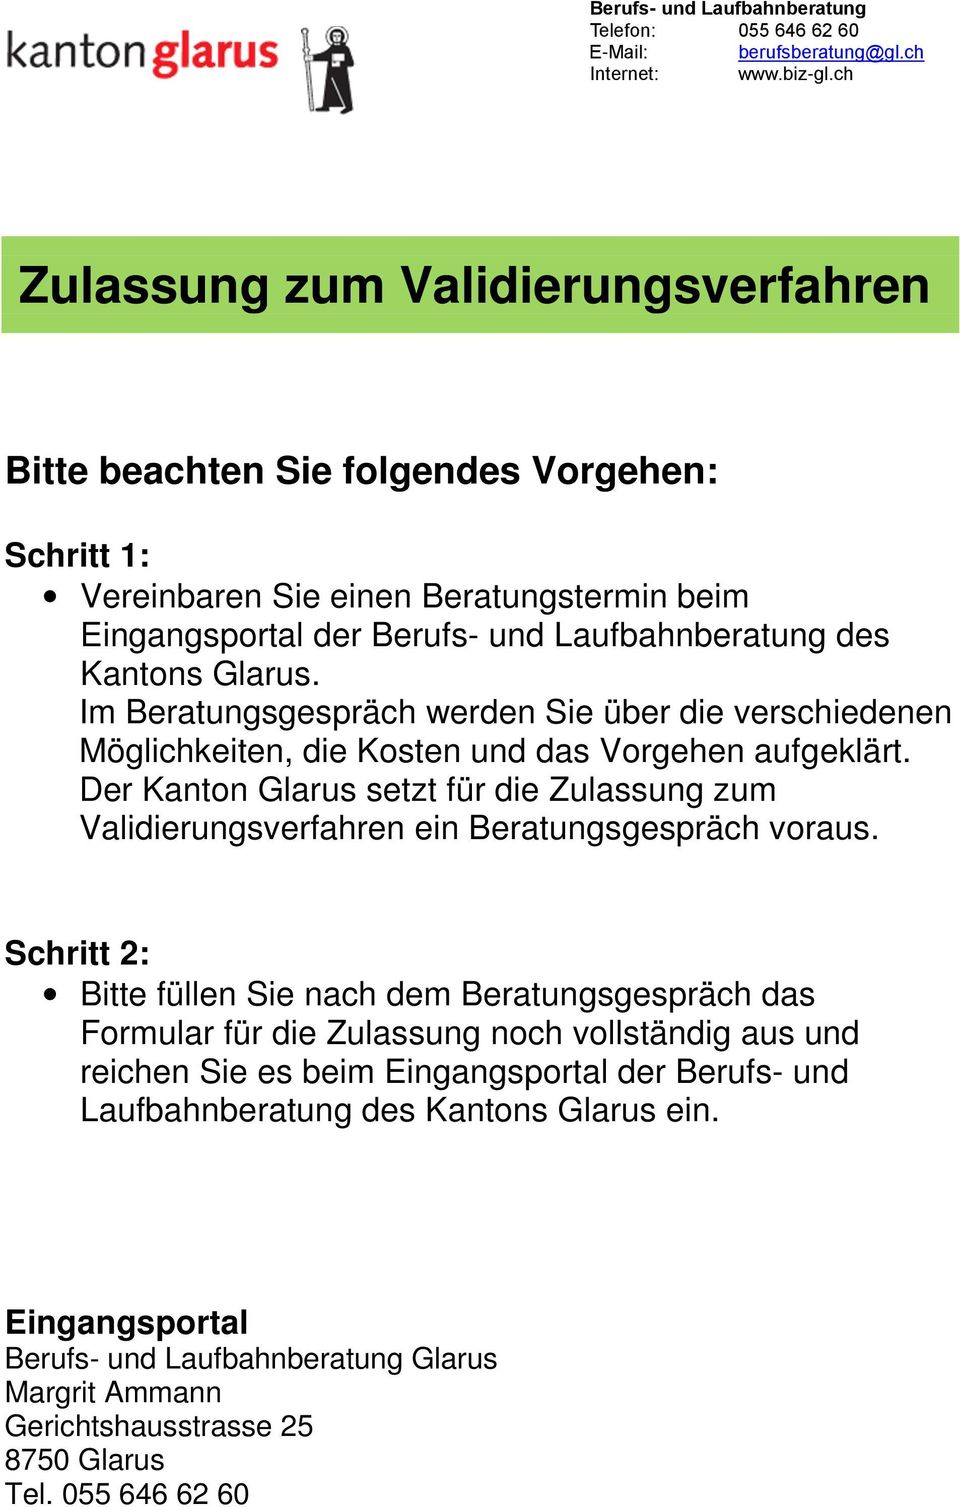 Der Kanton Glarus setzt für die Zulassung zum Validierungsverfahren ein Beratungsgespräch voraus.